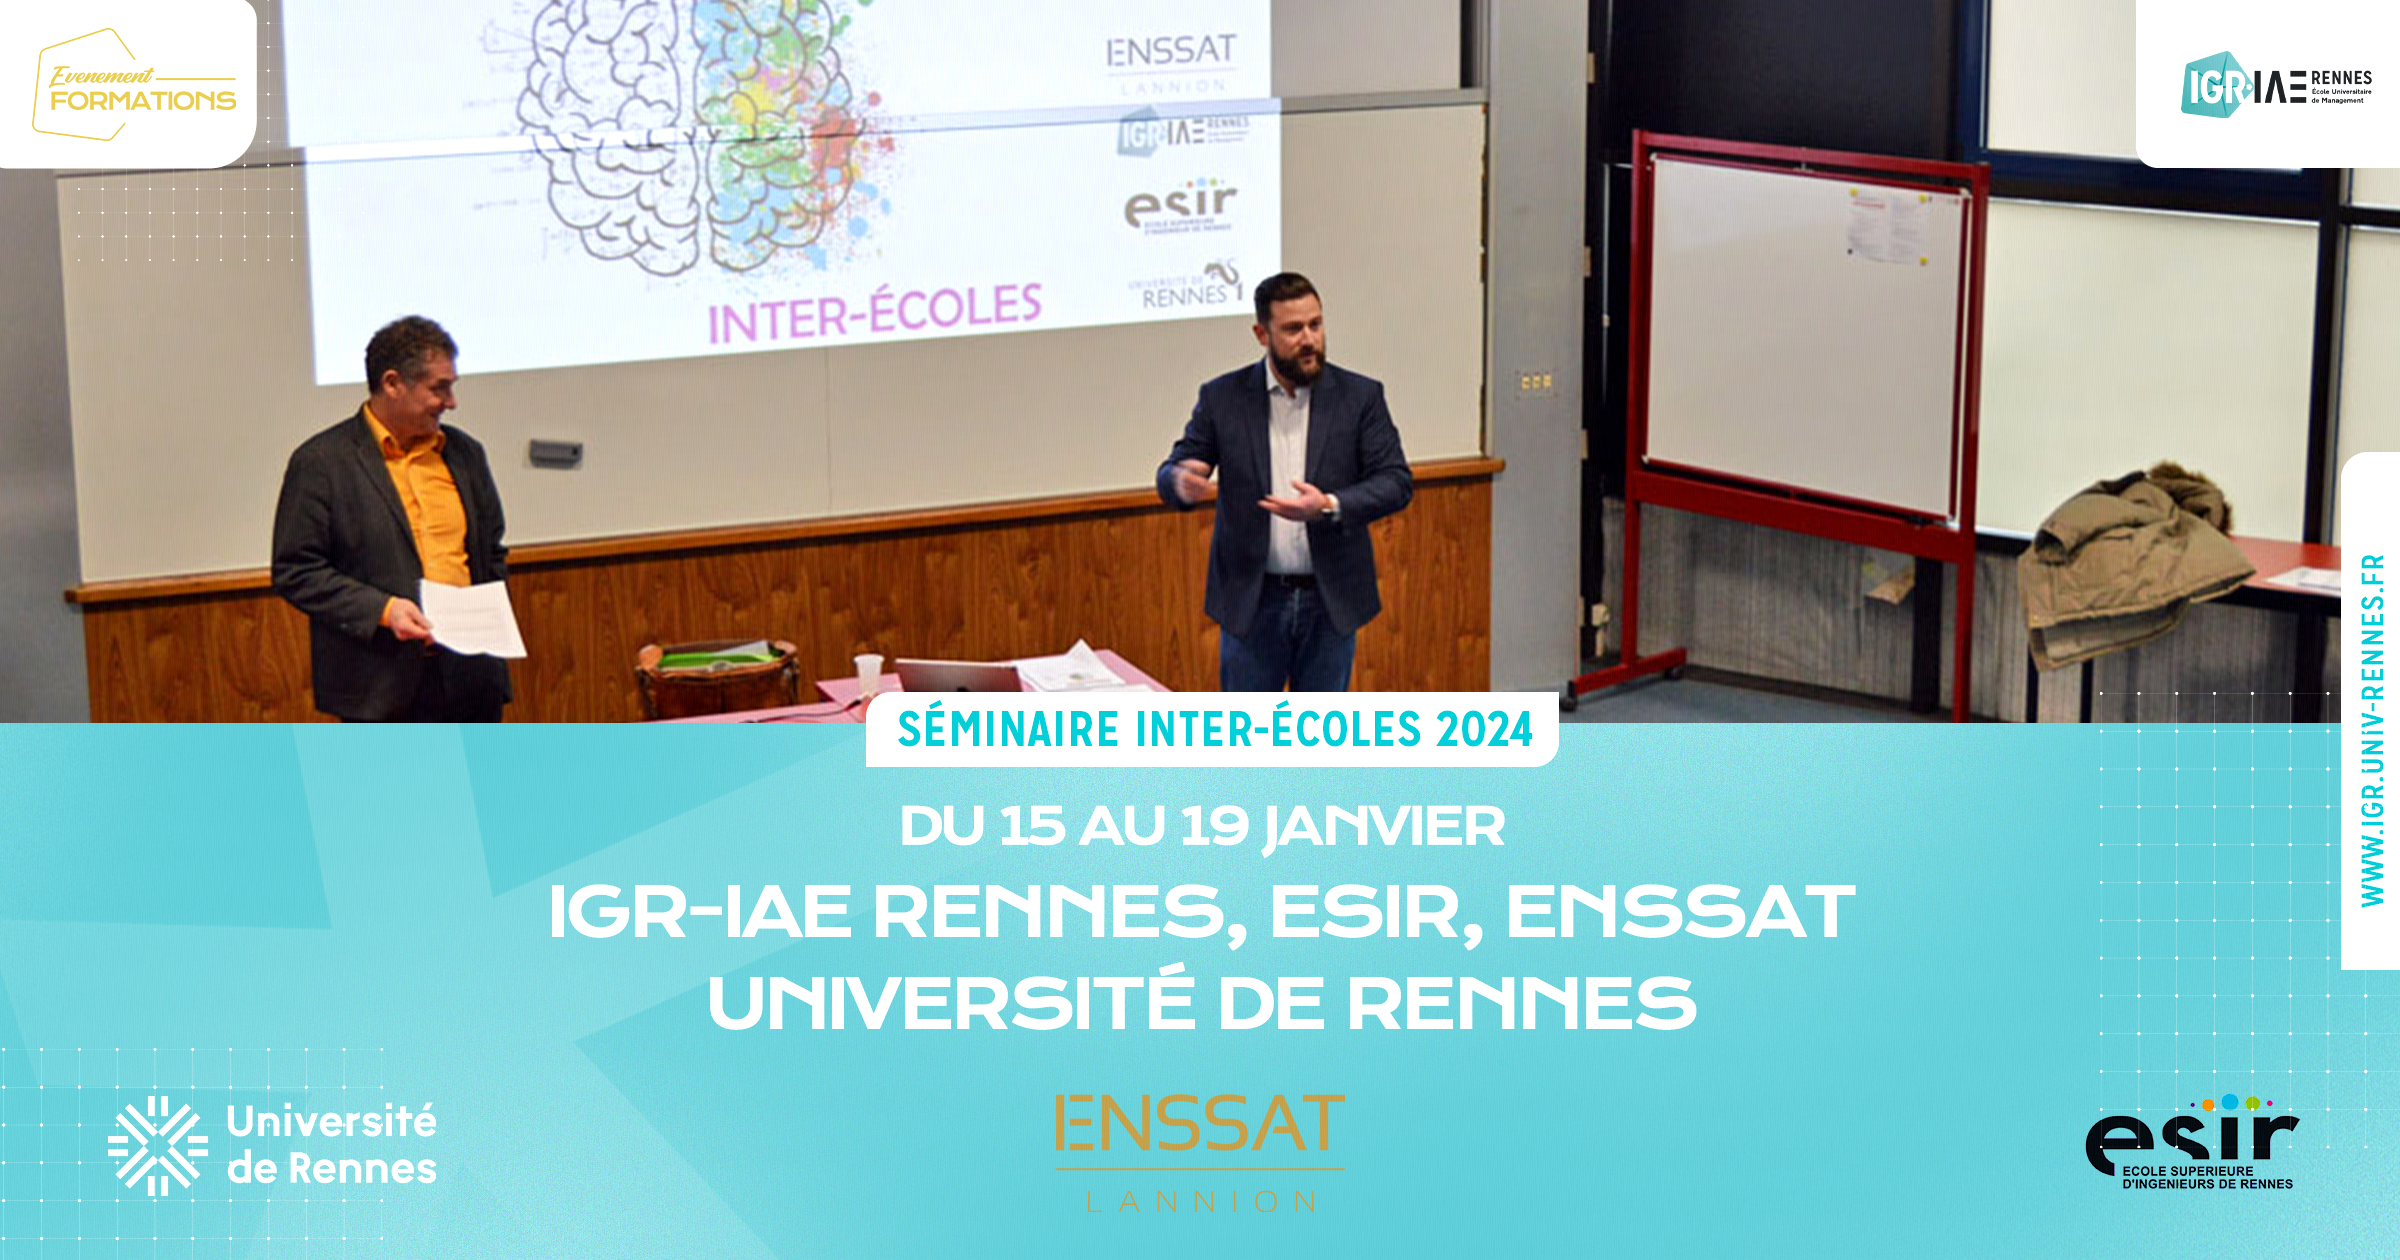 Séminaire inter-écoles 2024 : IGR-IAE Rennes, ESIR, ENSSAT / Université de Rennes